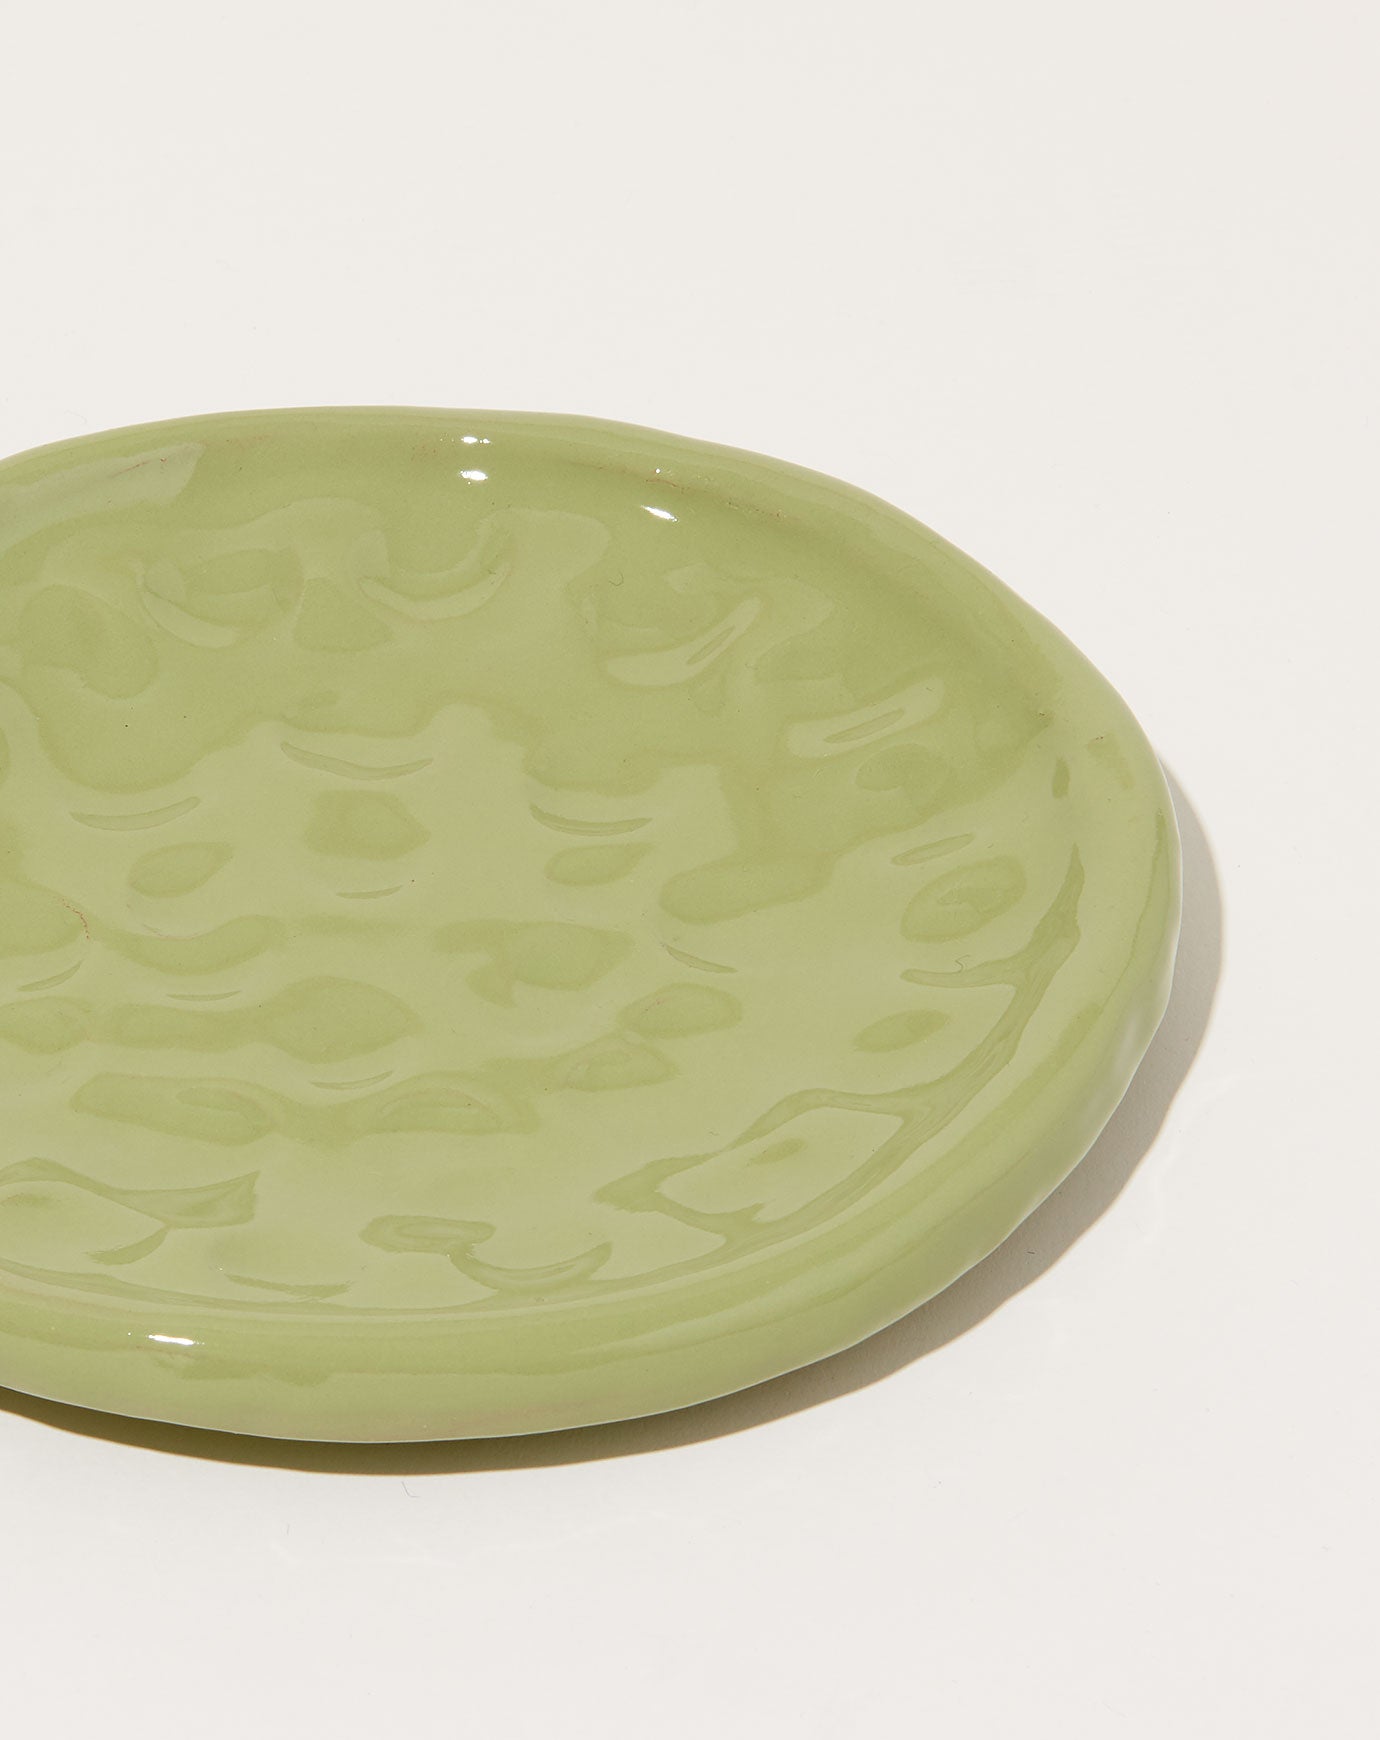 Sean Gerstley Dessert Plate in Froggy Green